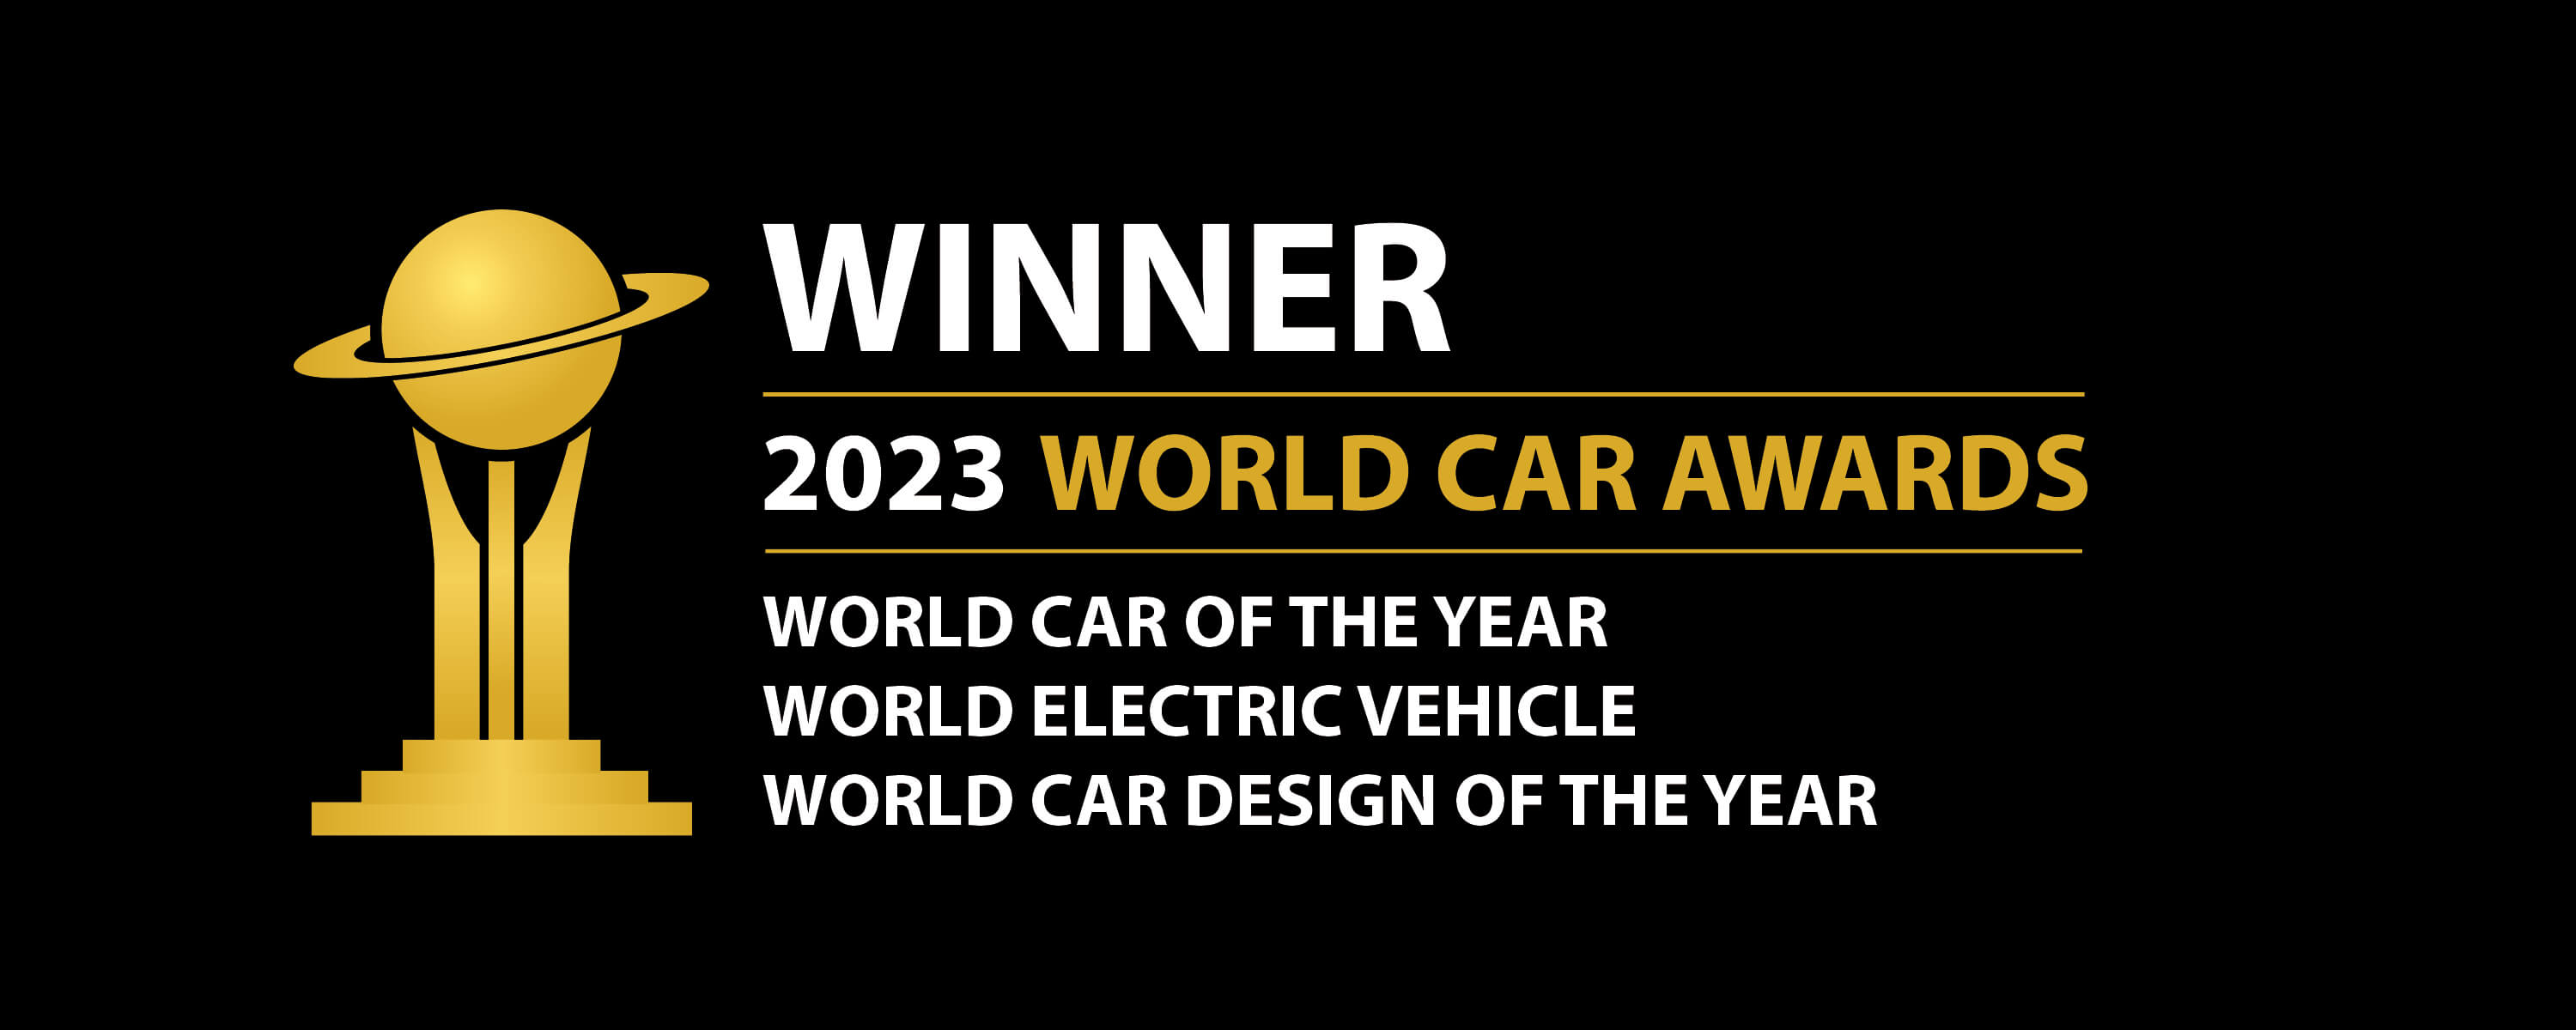 2023 World Car Awards